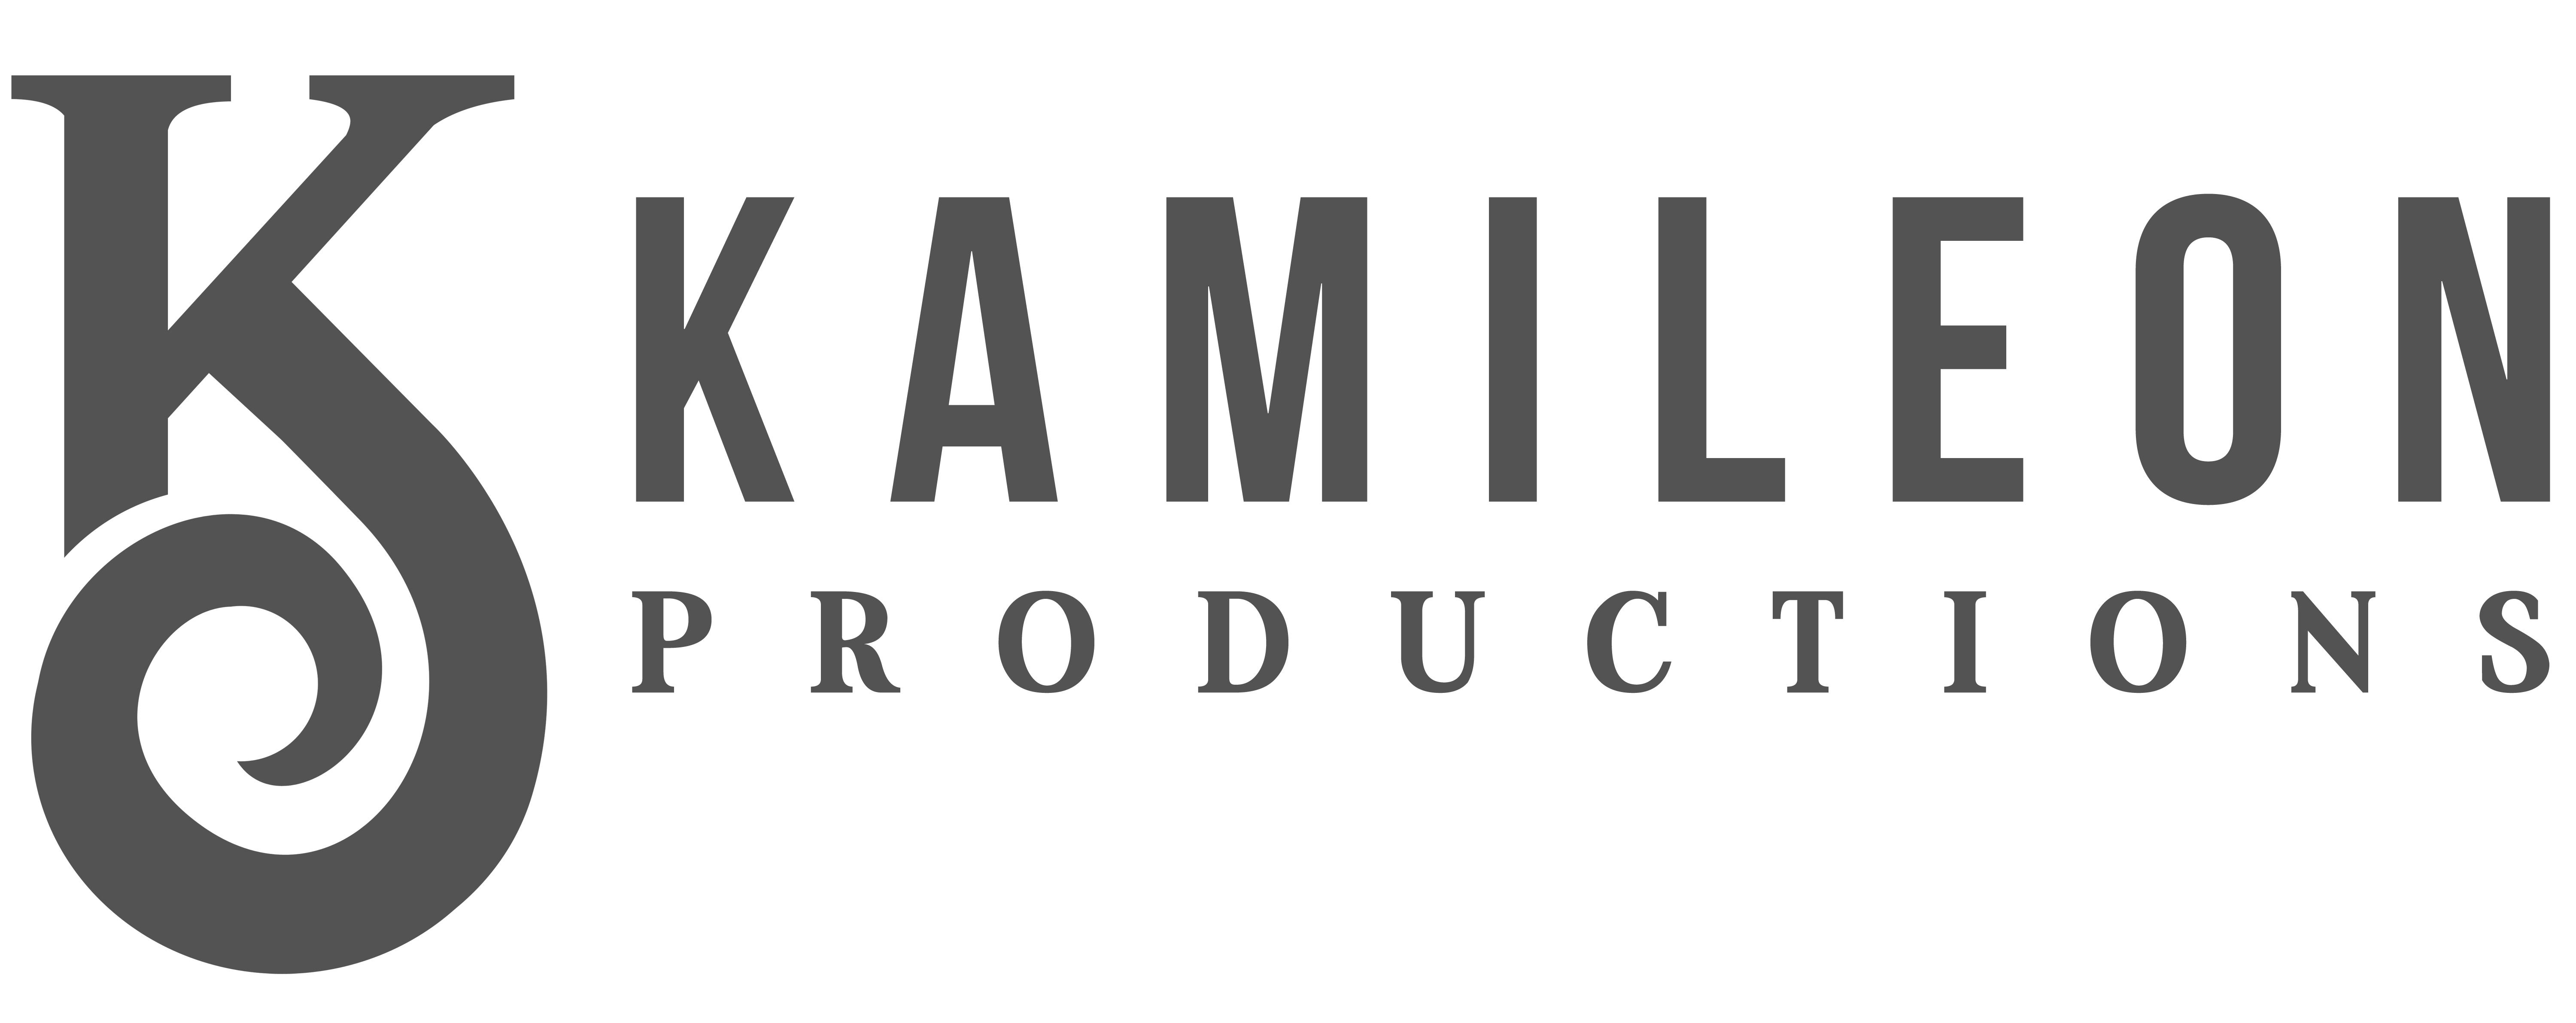 Kamileon Productions Logo